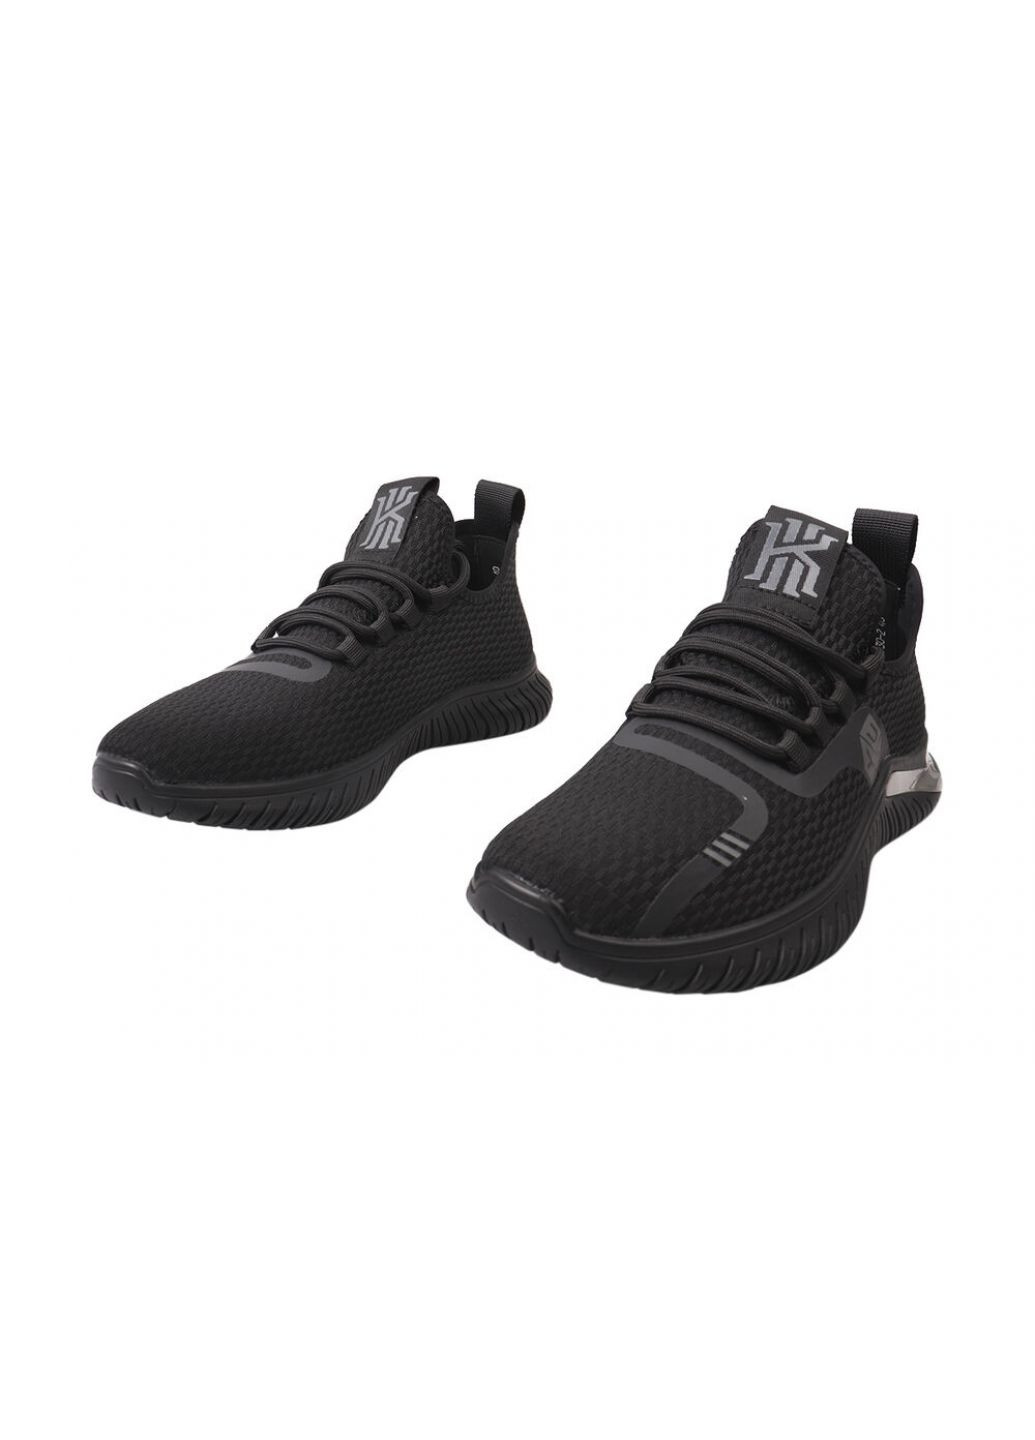 Черные кроссовки мужские из текстиля, на низком ходу, на шнуровке, черные, Lifexpert 605-21DK